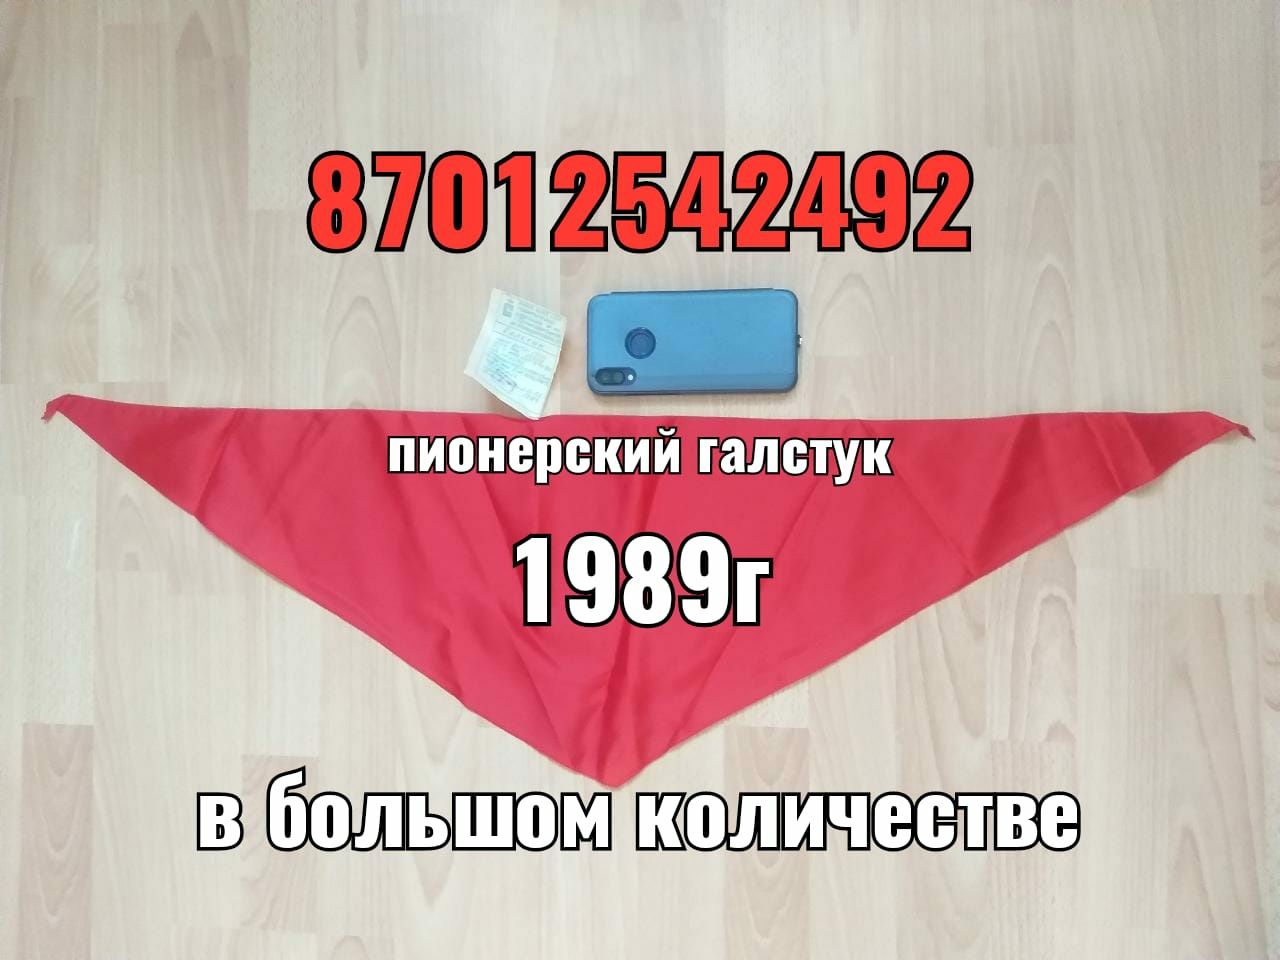 пионерский галстук СССР  1989 г  новые в упаковке в большом количестве